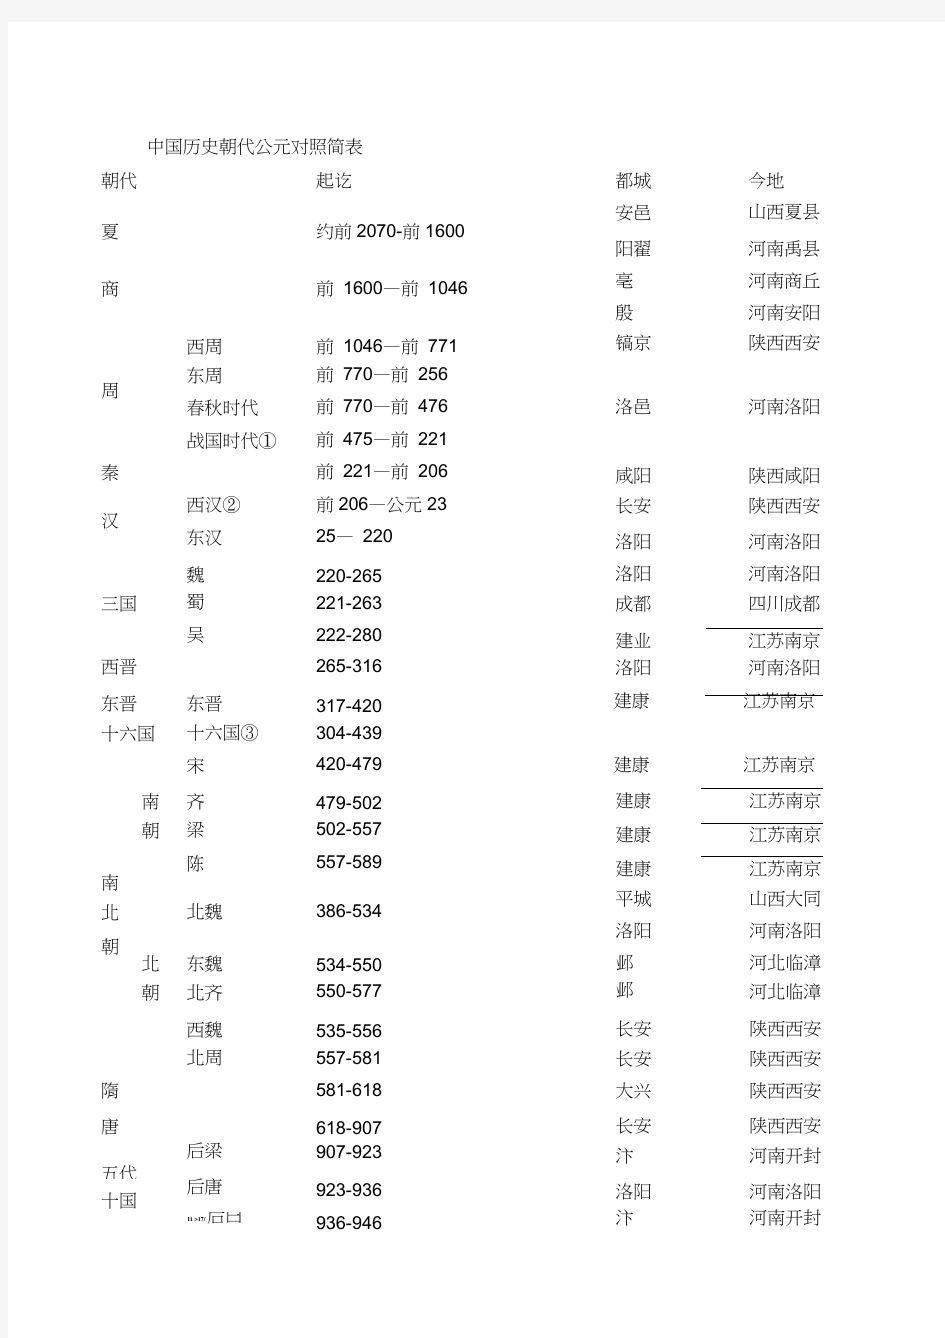 中国历史朝代公元对照简表